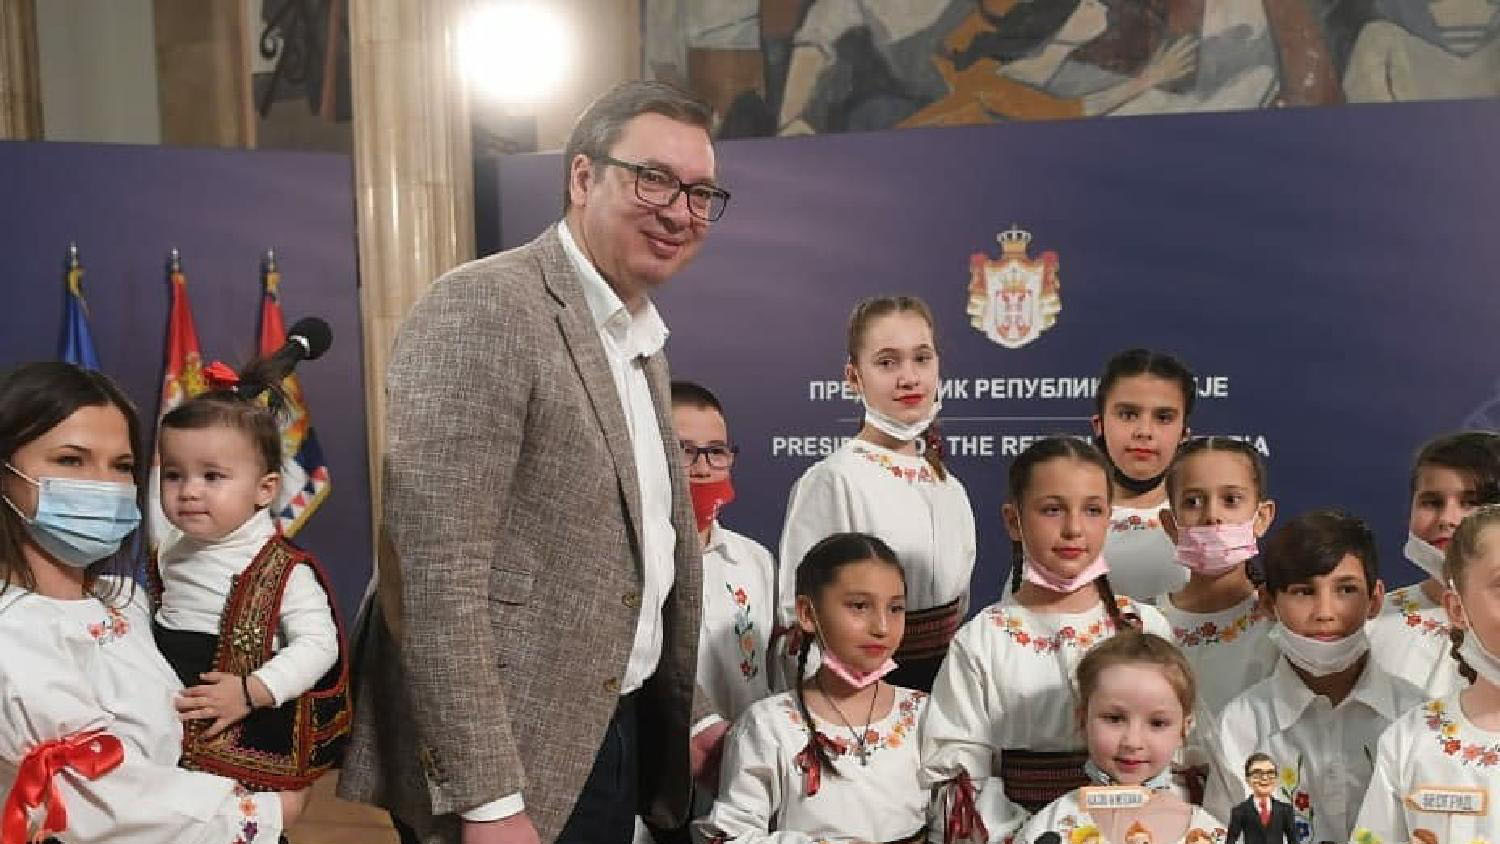 Tragom izjave predsednika Srbije: Nema dece jer ovde nema perspektive 1